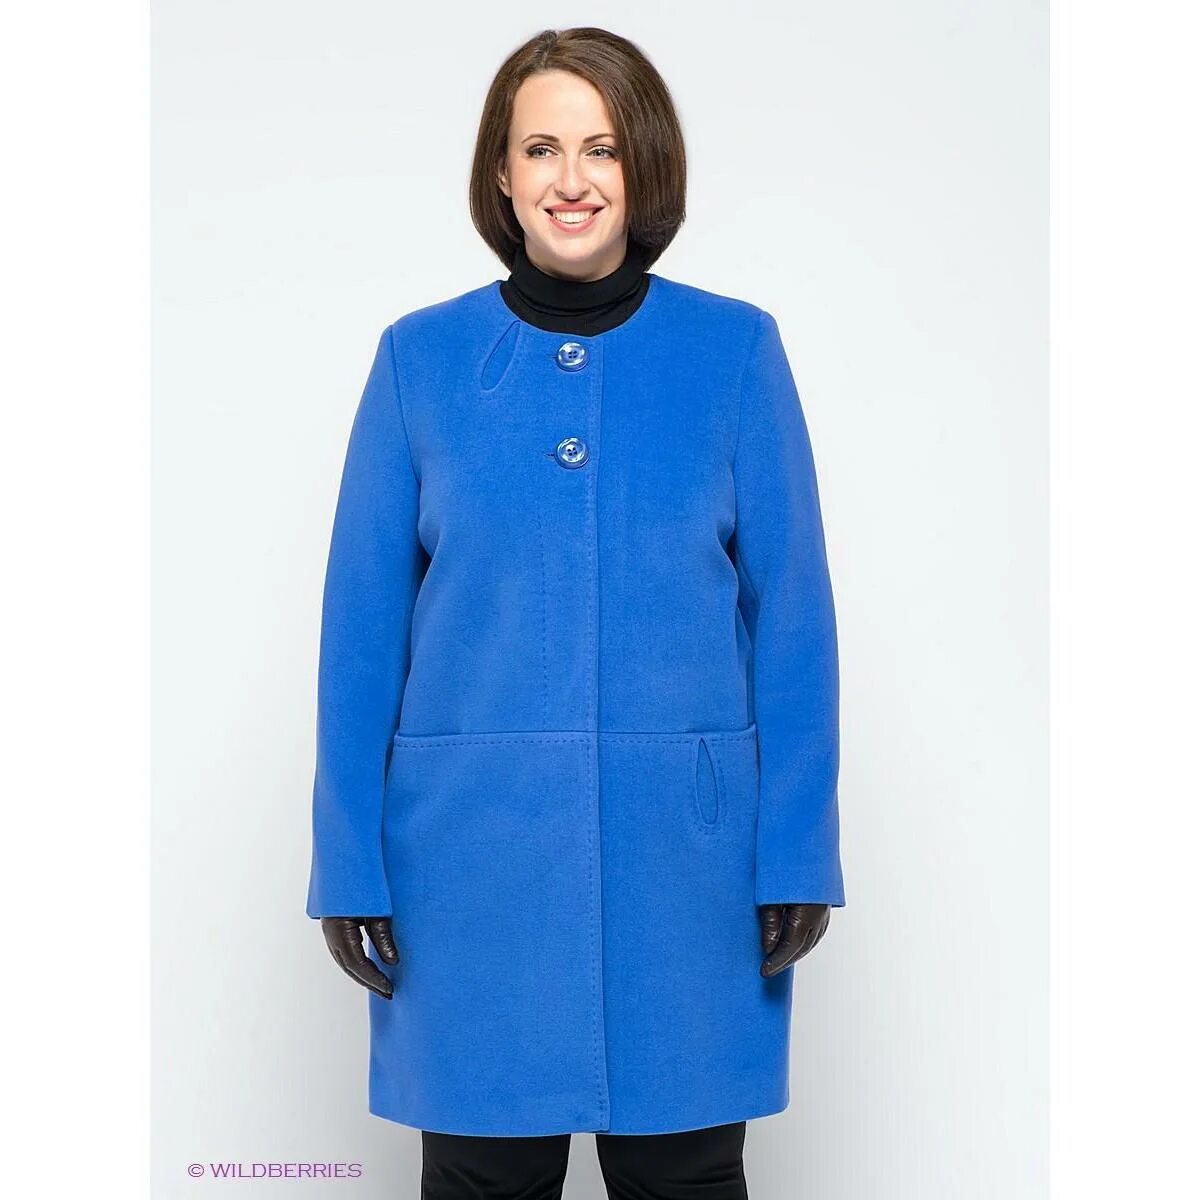 Купить женское пальто от производителя. Женское пальто. Пальто женское демисезонное больших размеров. Полупальто больших размеров для женщин. Драповые пальто больших размеров женские.